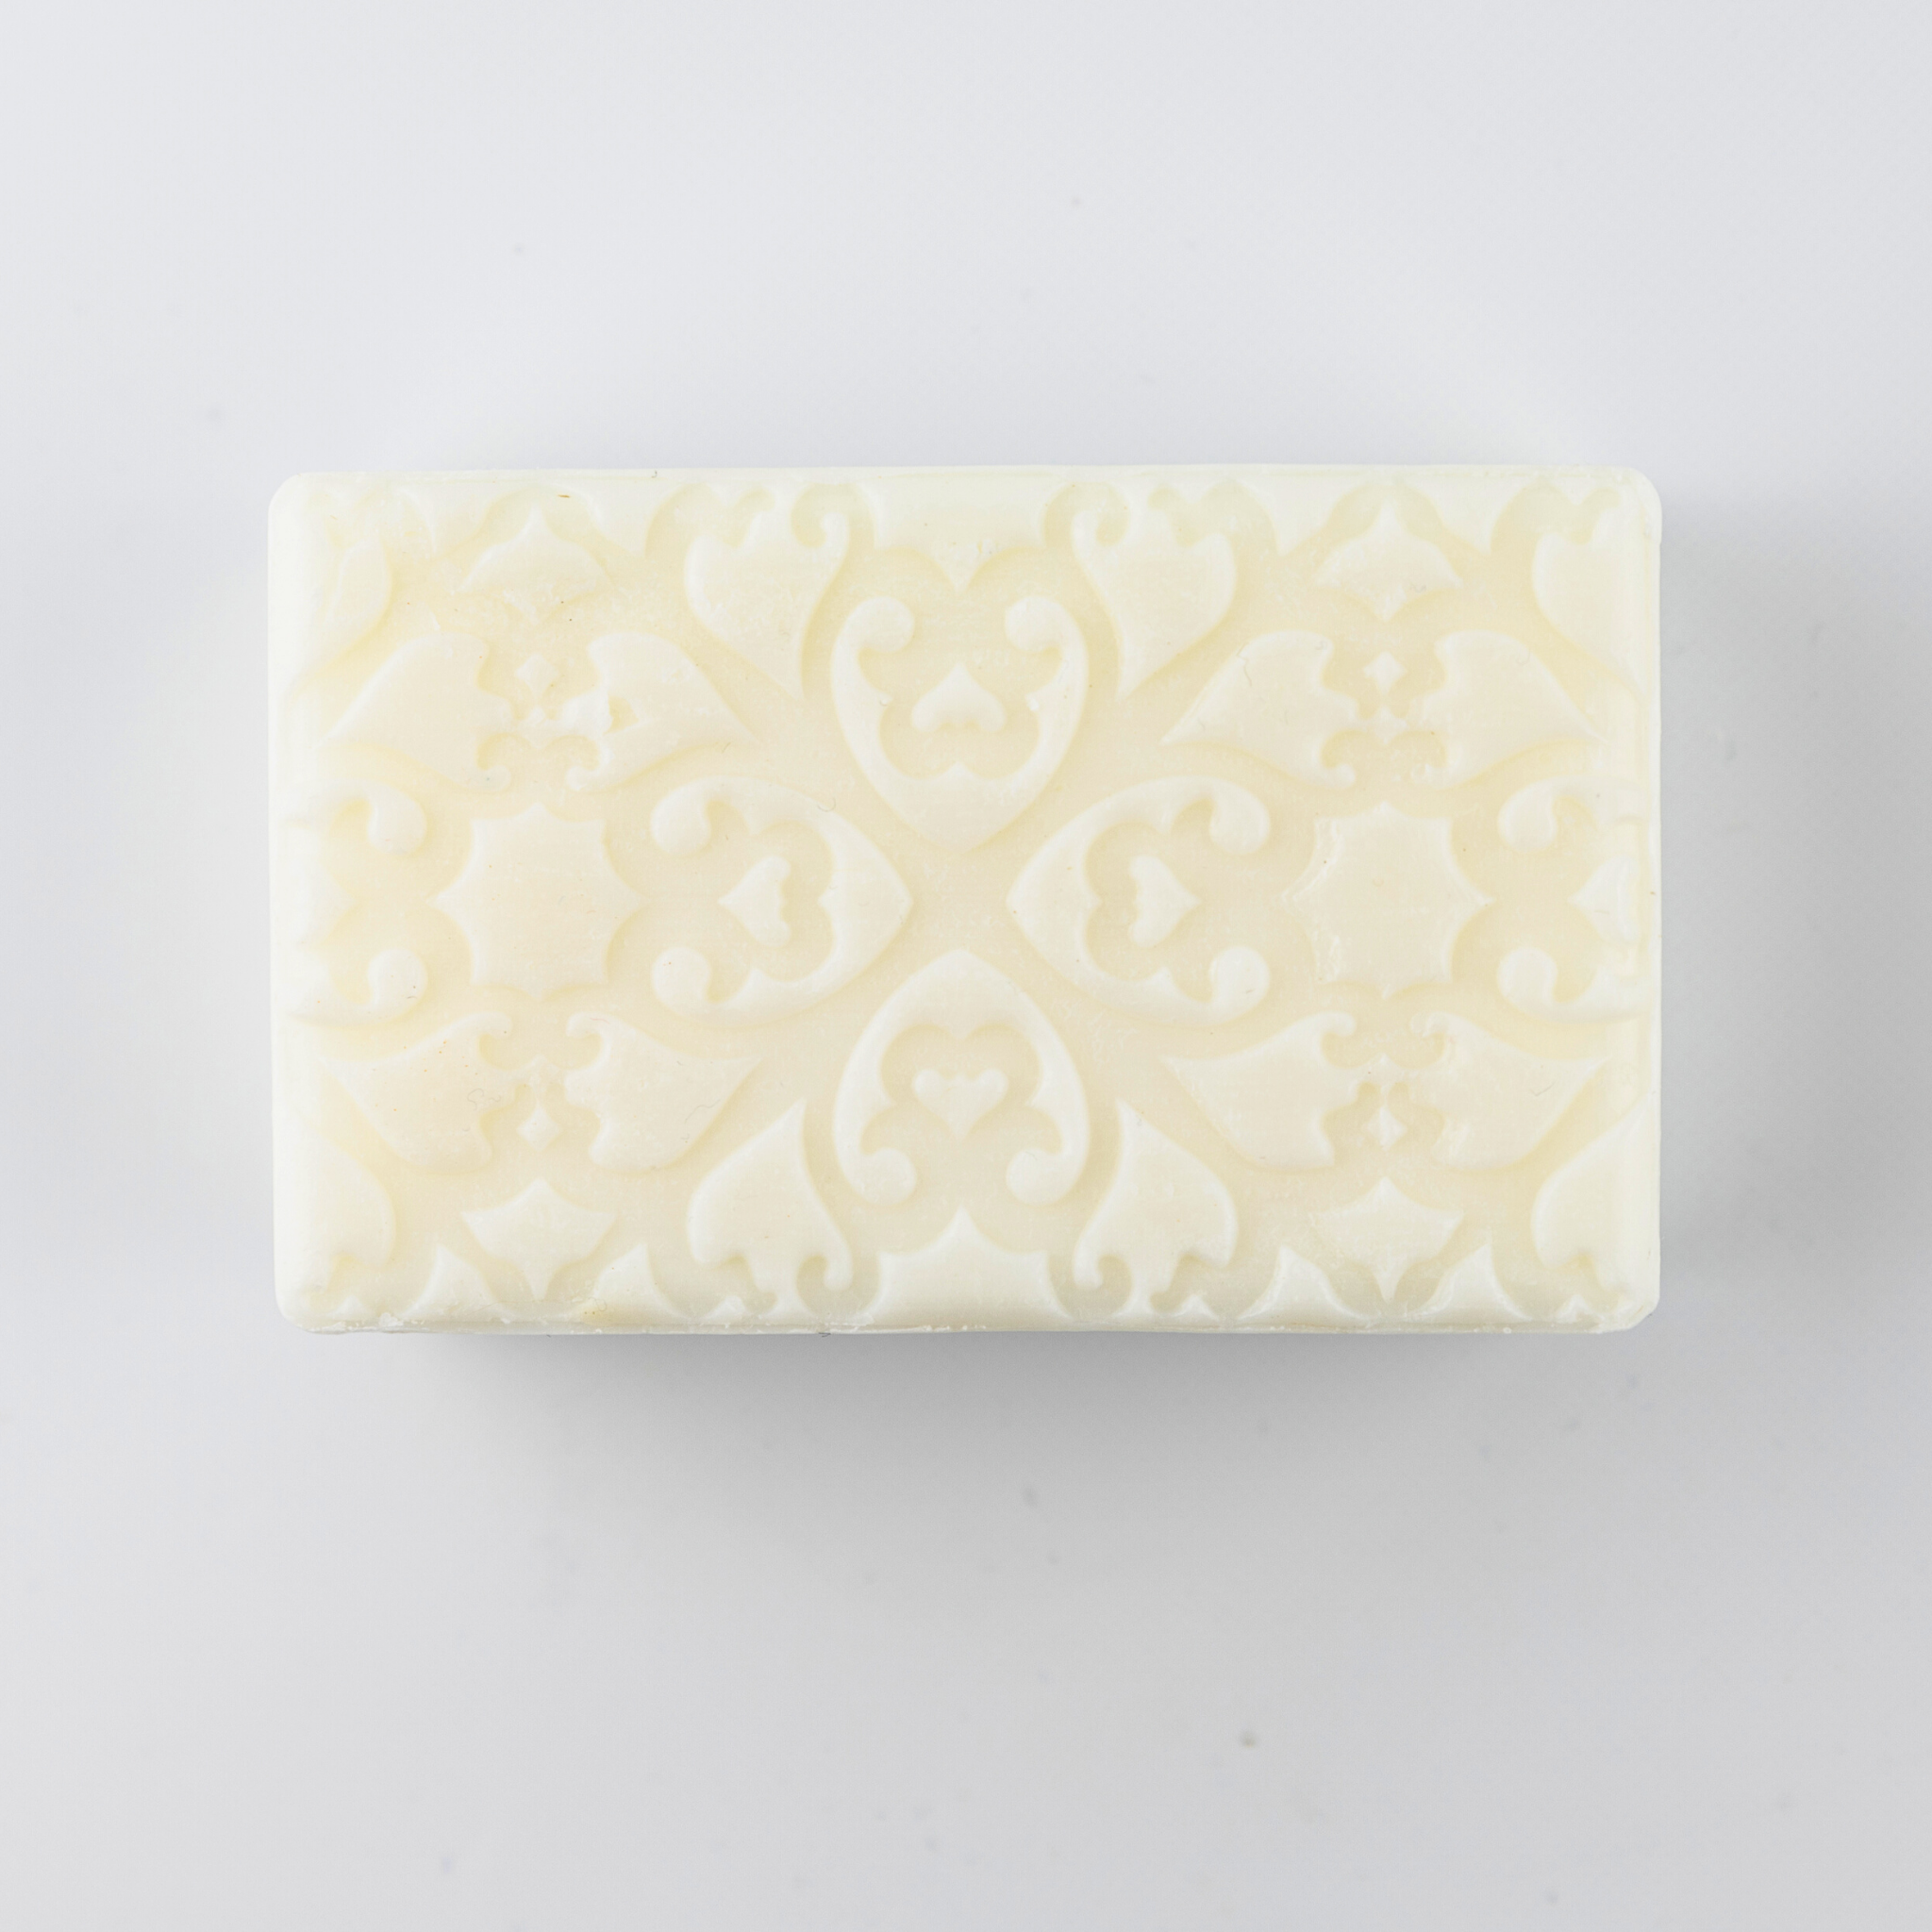 PurPur natural soap